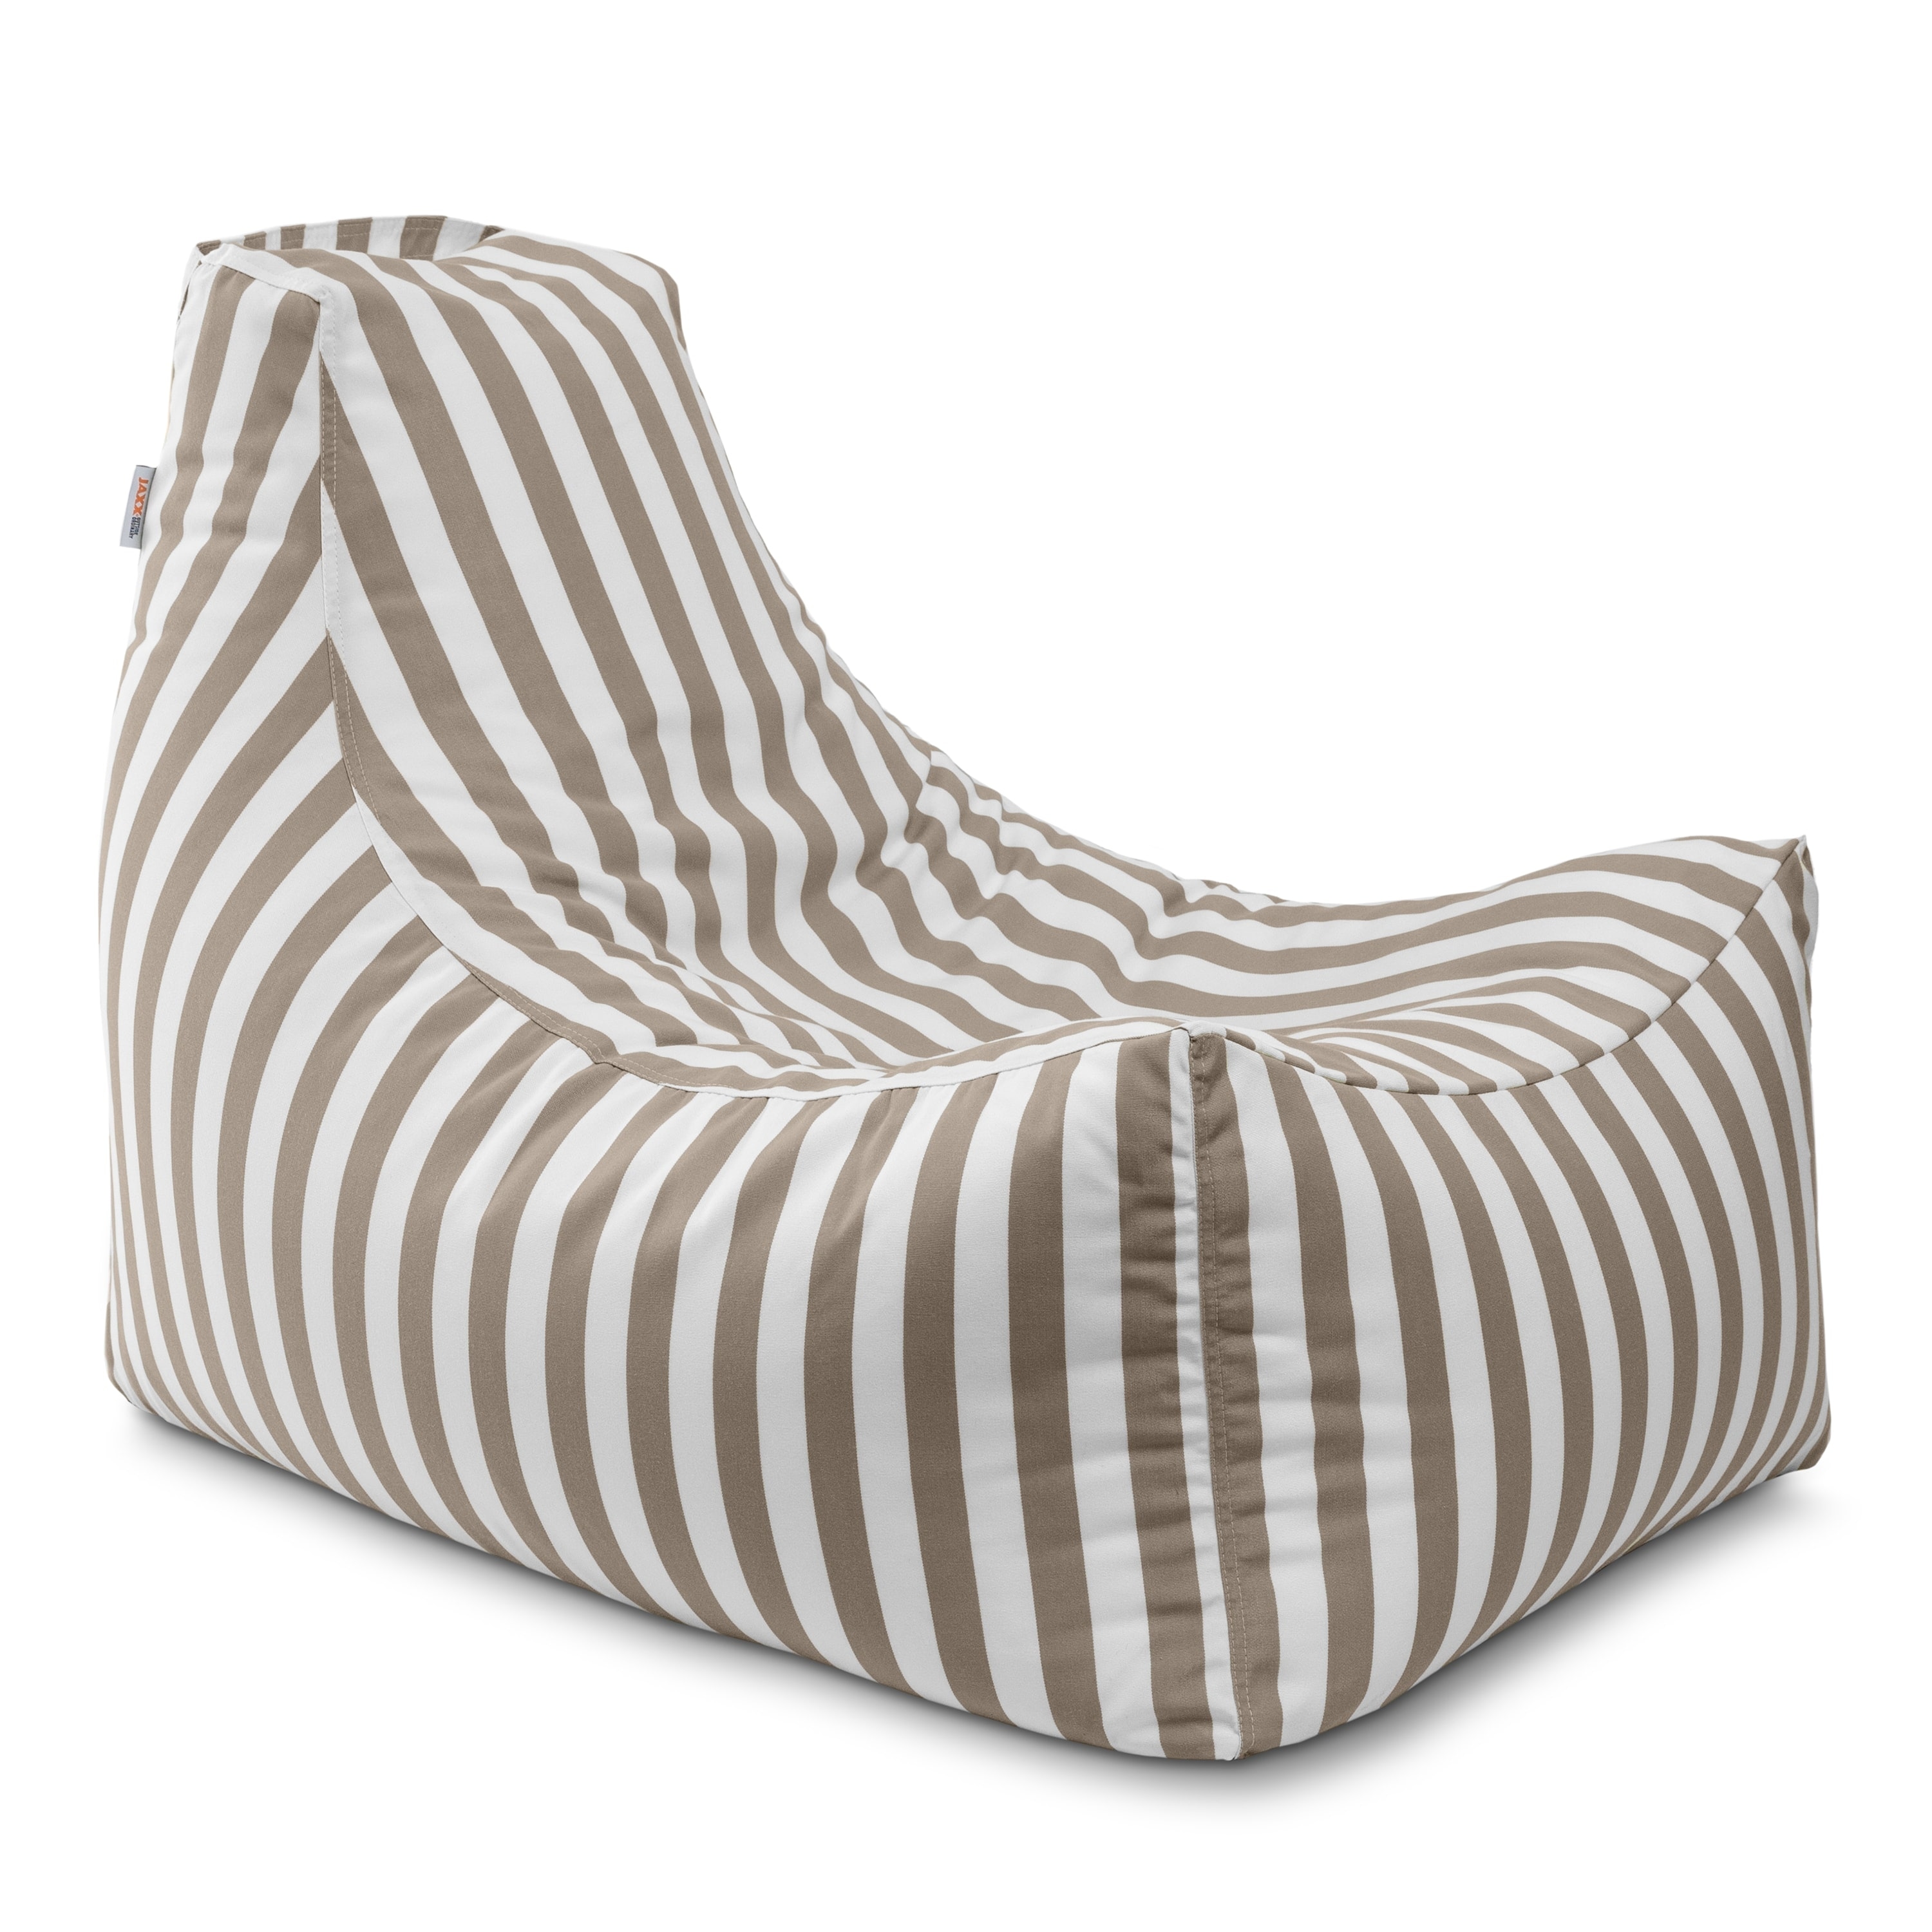 Jaxx Bean Bags Jaxx Juniper Outdoor Patio Bean Bag Chair. Taupe-Stripes - image 1 of 5